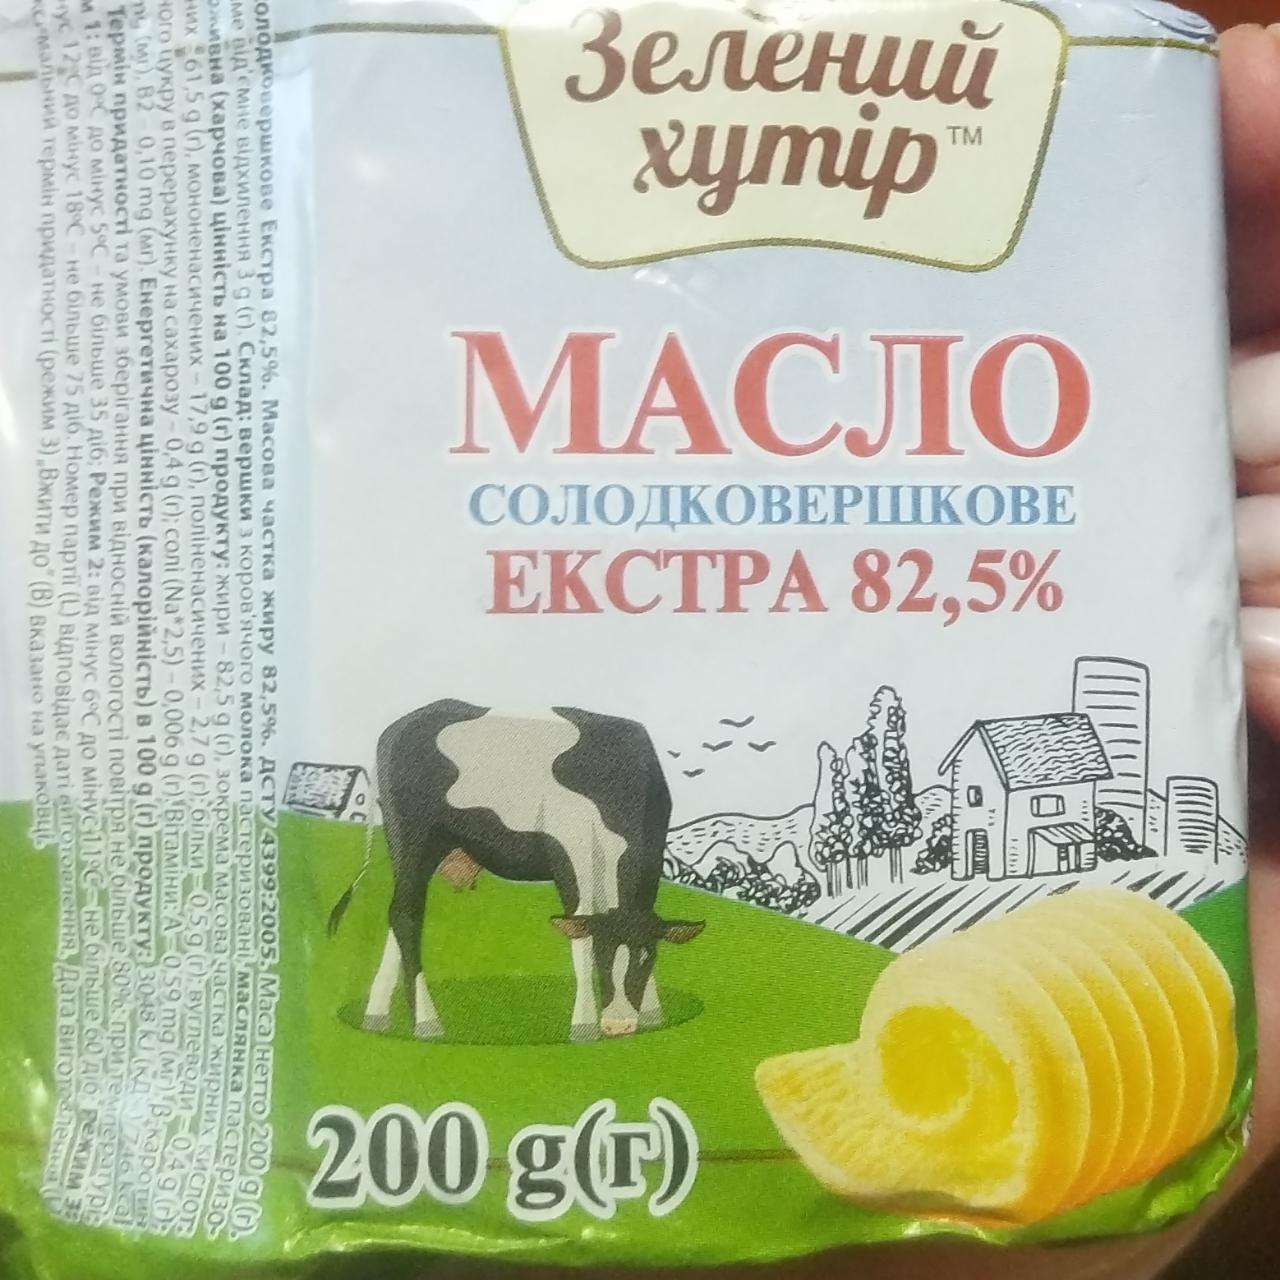 Фото - Масло сладкосливочное Экстра 82.5% Зелёный хутор